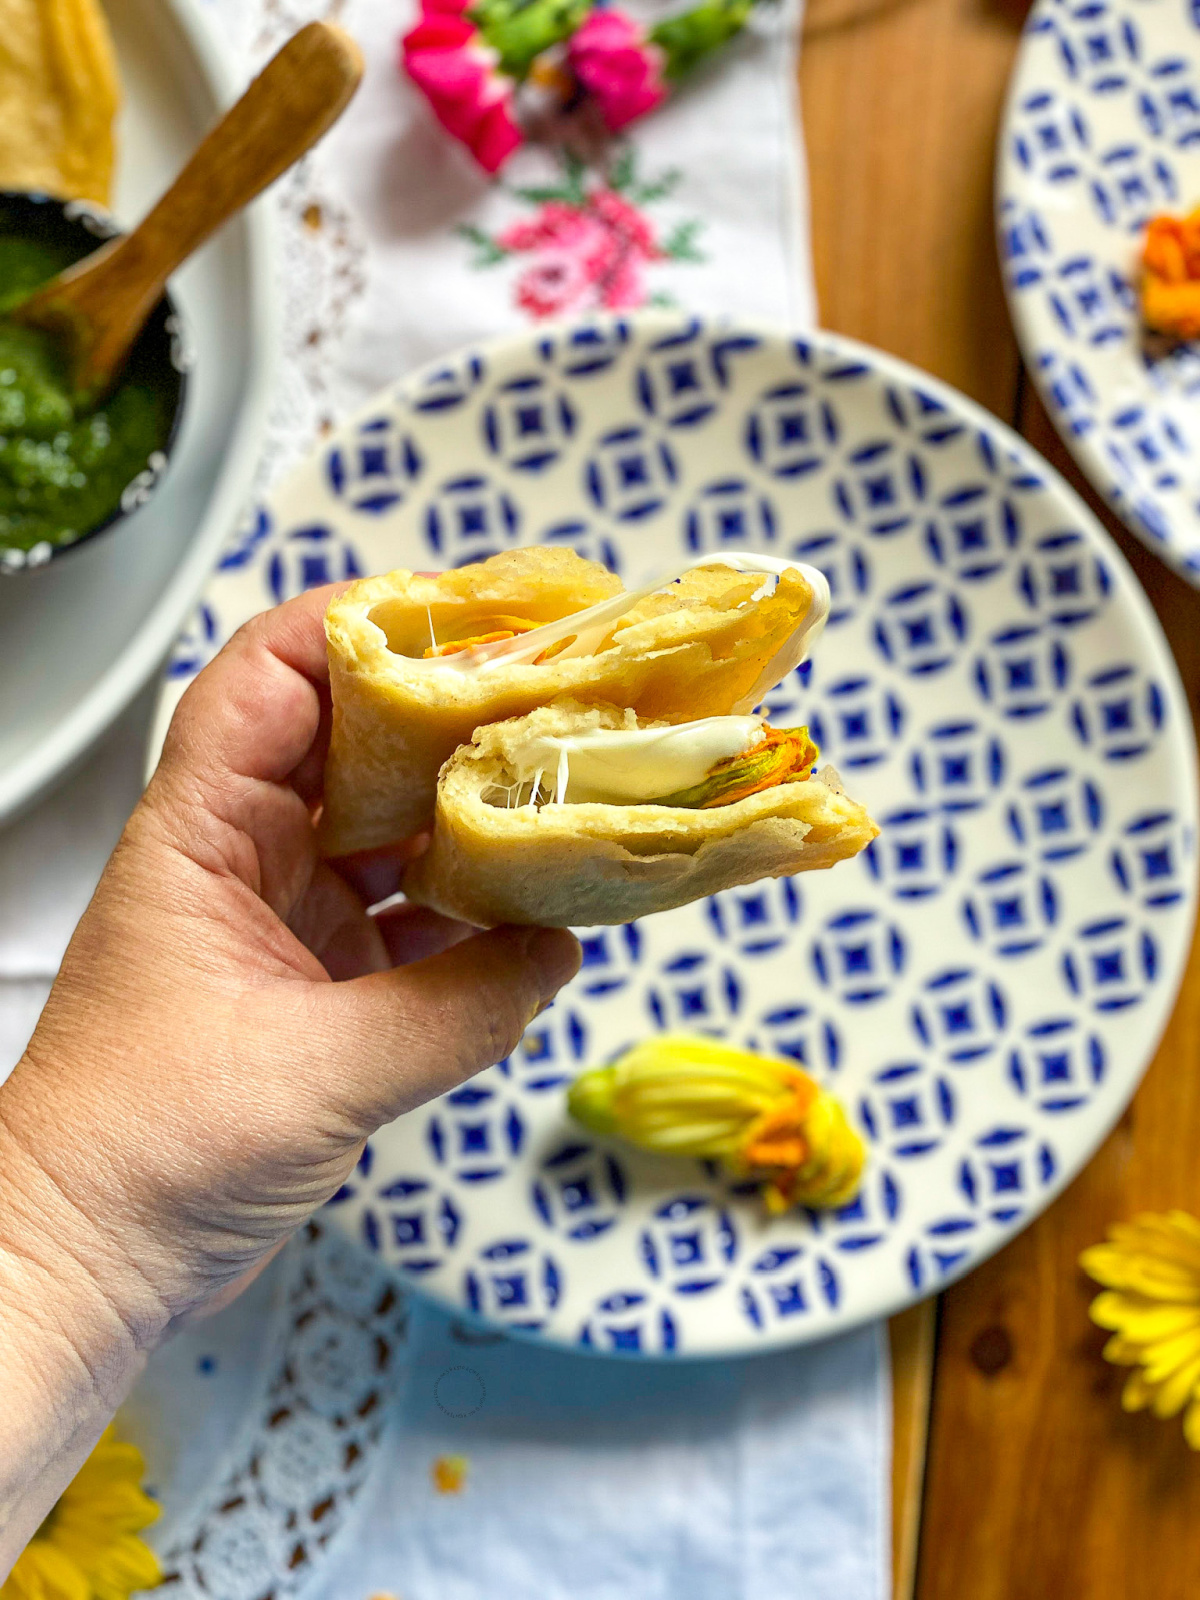 una mano sosteniendo una quesadilla que muestra el queso derretido dentro